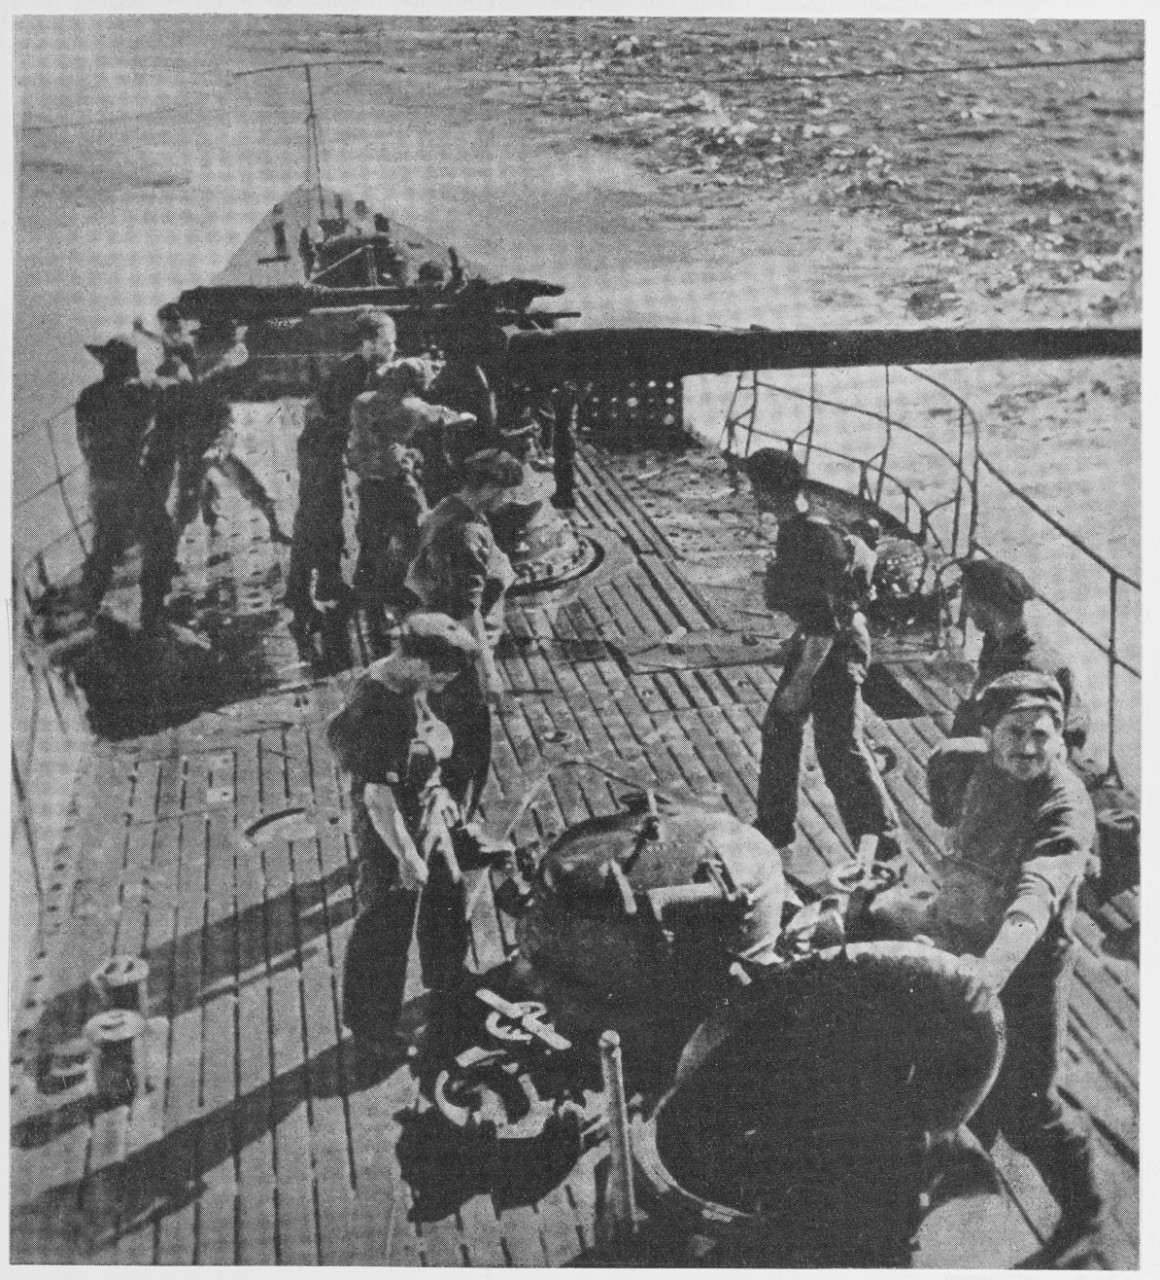 Men on deck of ship. Italy - SS Class. Circa 1942